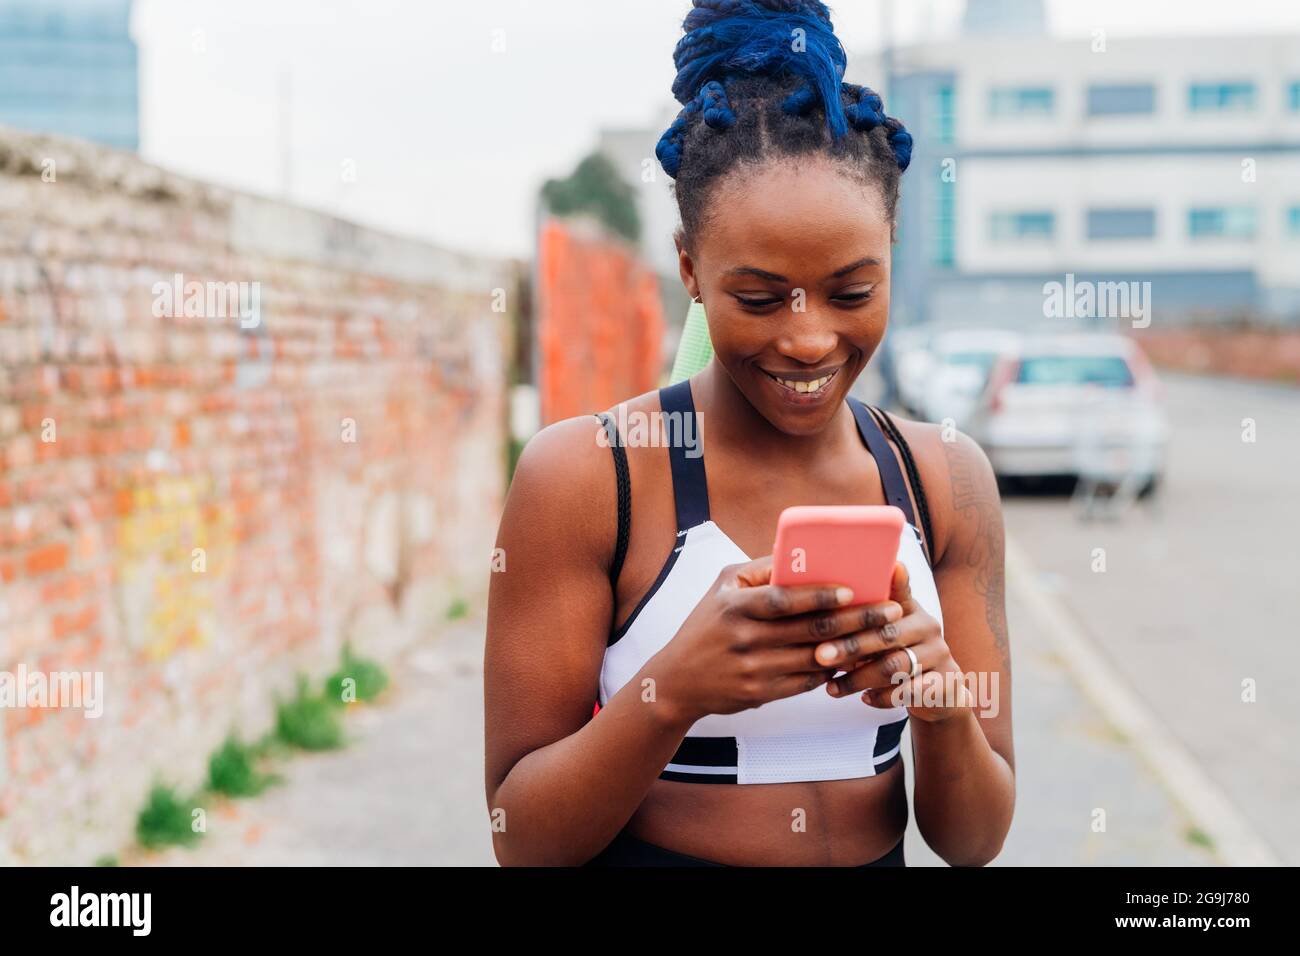 Italien, Mailand, lächelnde Frau in Sportkleidung, die in der Stadt auf das Smartphone schaut Stockfoto